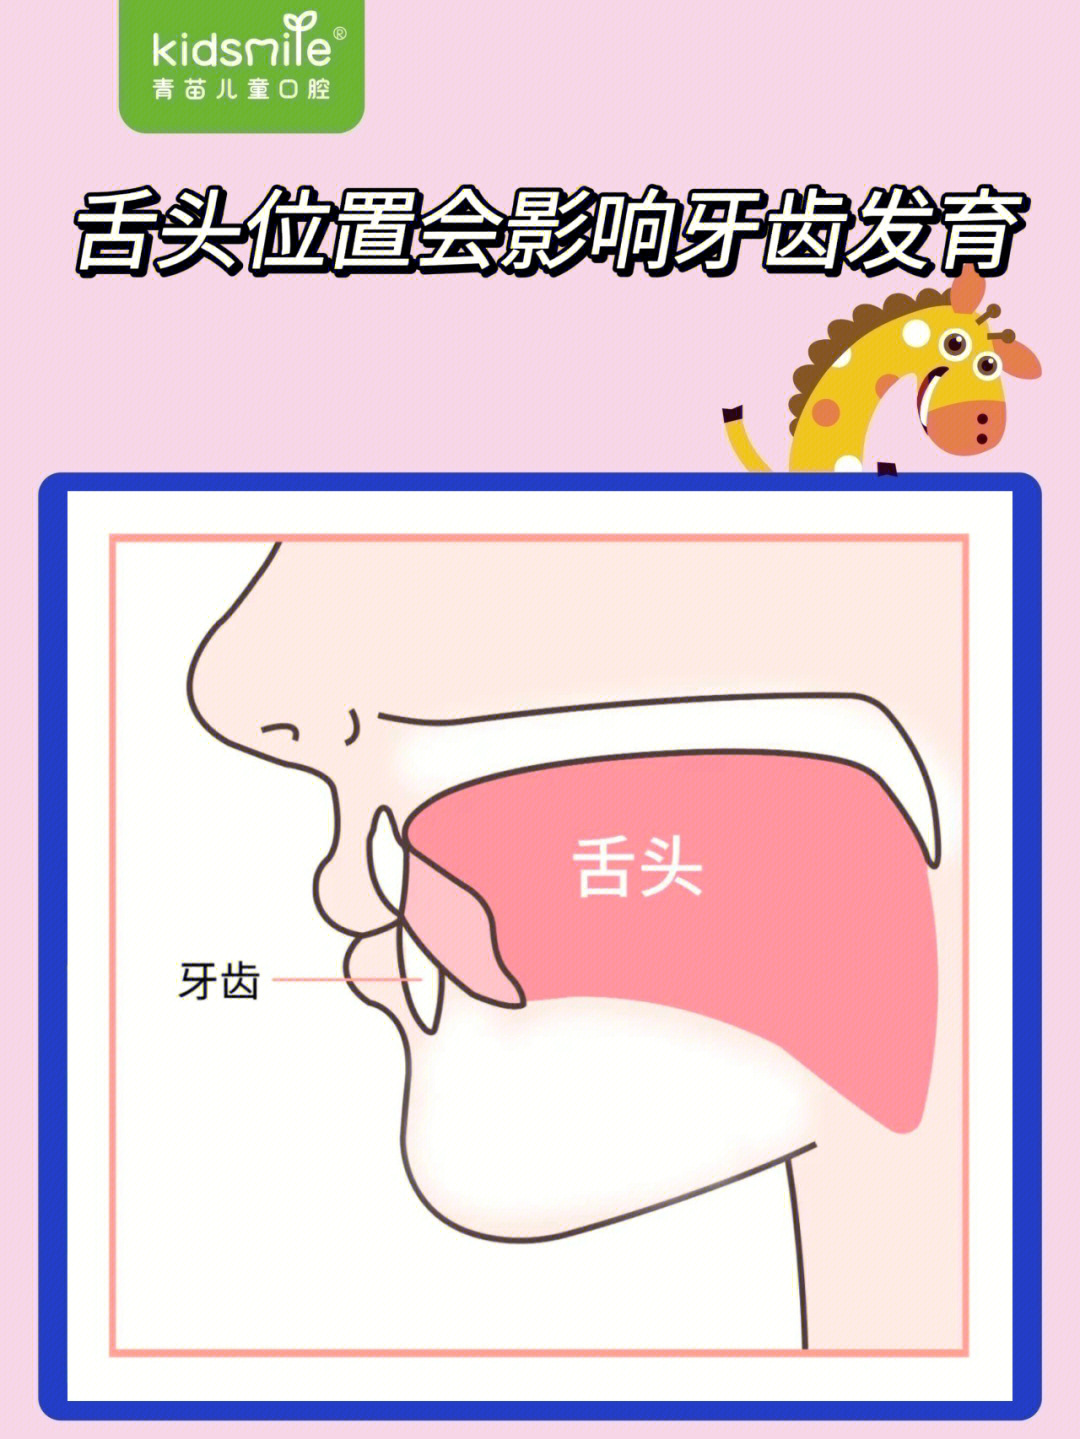 舌头怎么放在正确位置图片